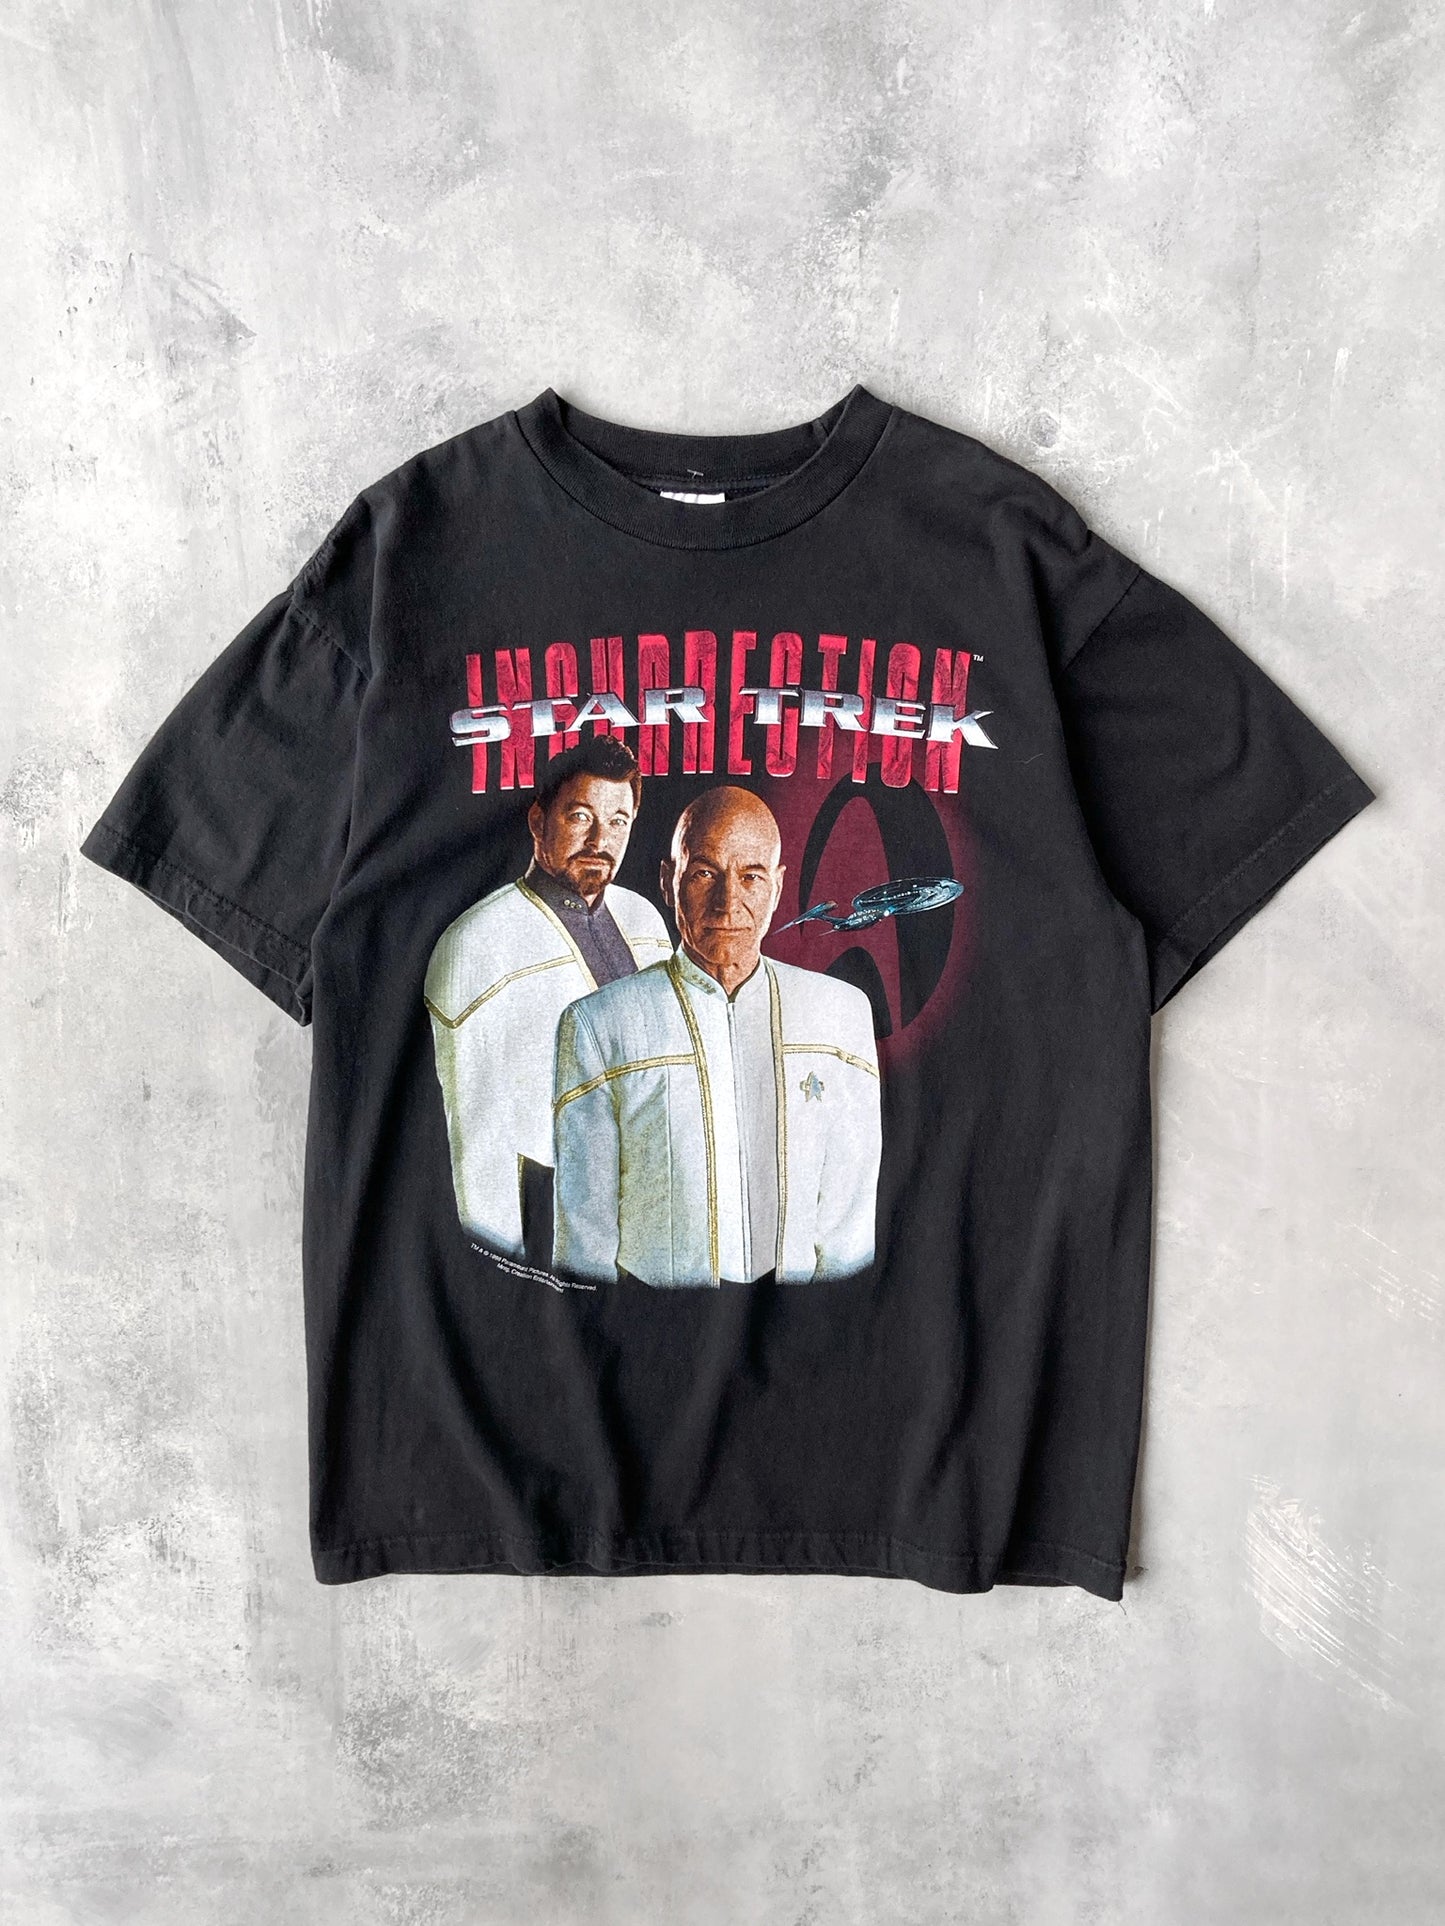 Star Trek Insurrection T-Shirt '98 - Large